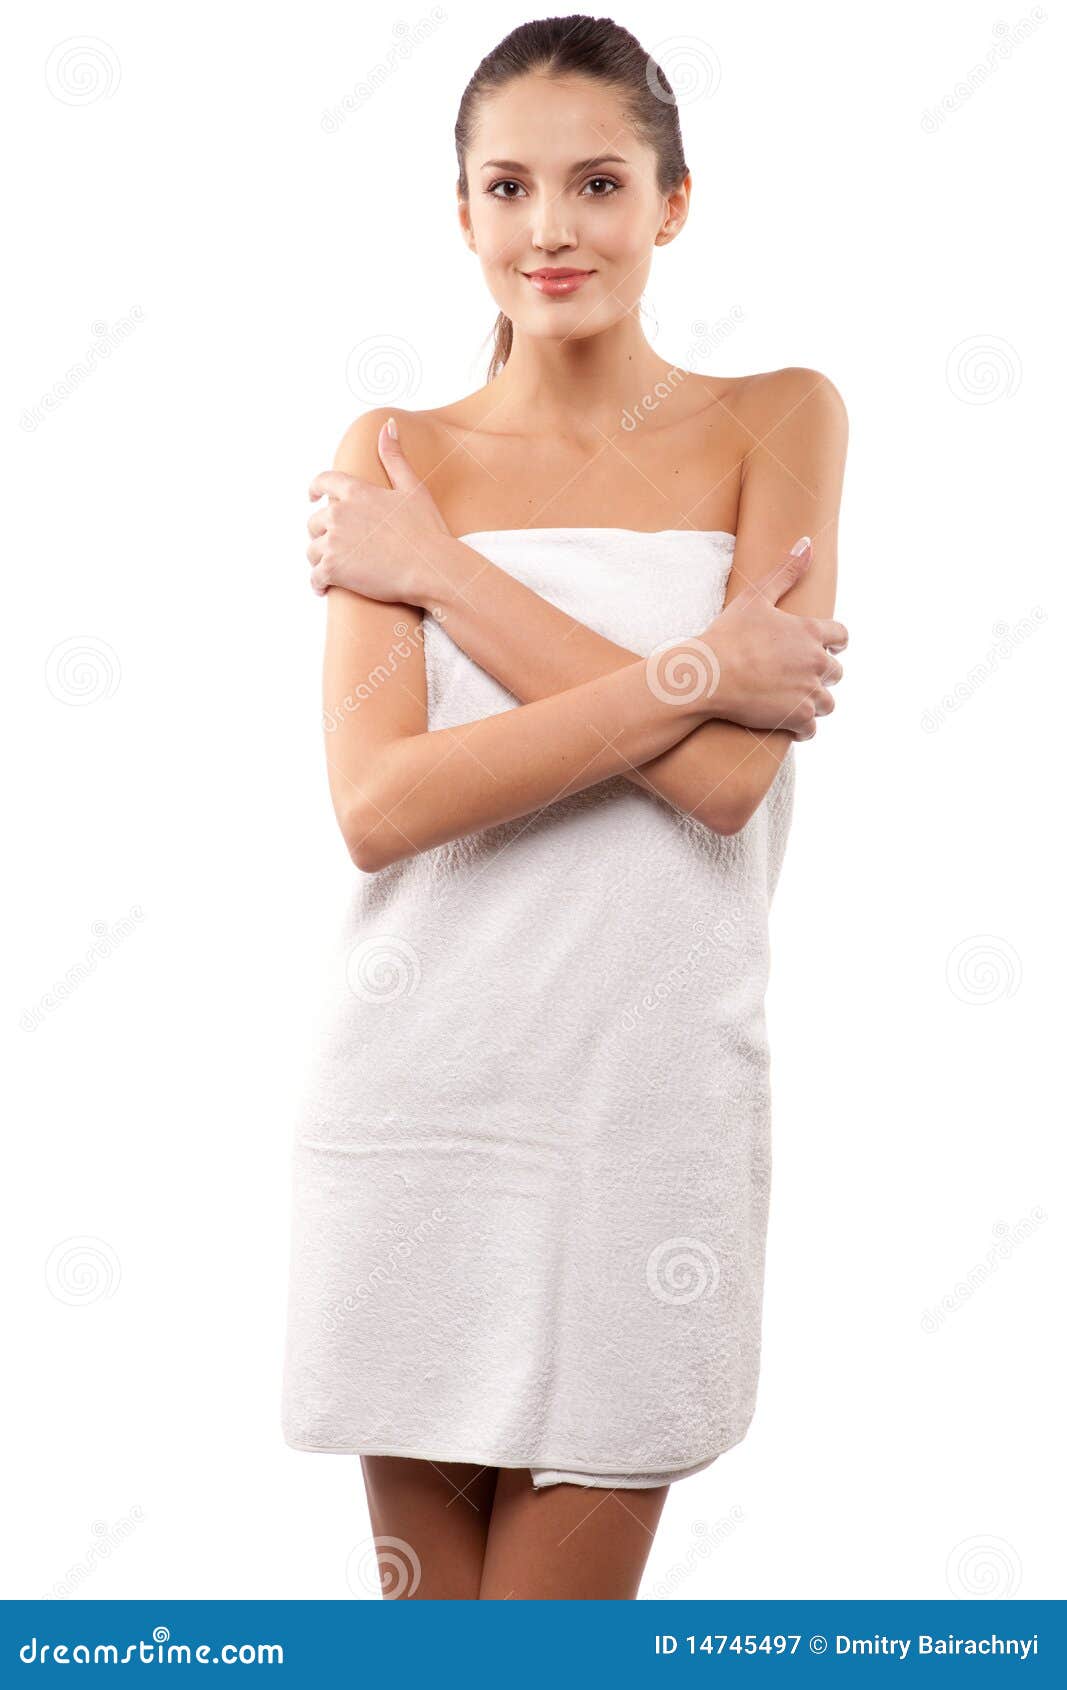 Упало полотенце перед. Девушка в полотенце. Девушка в белом полотенце. Стройная девушка в полотенце. Красавица в полотенце.